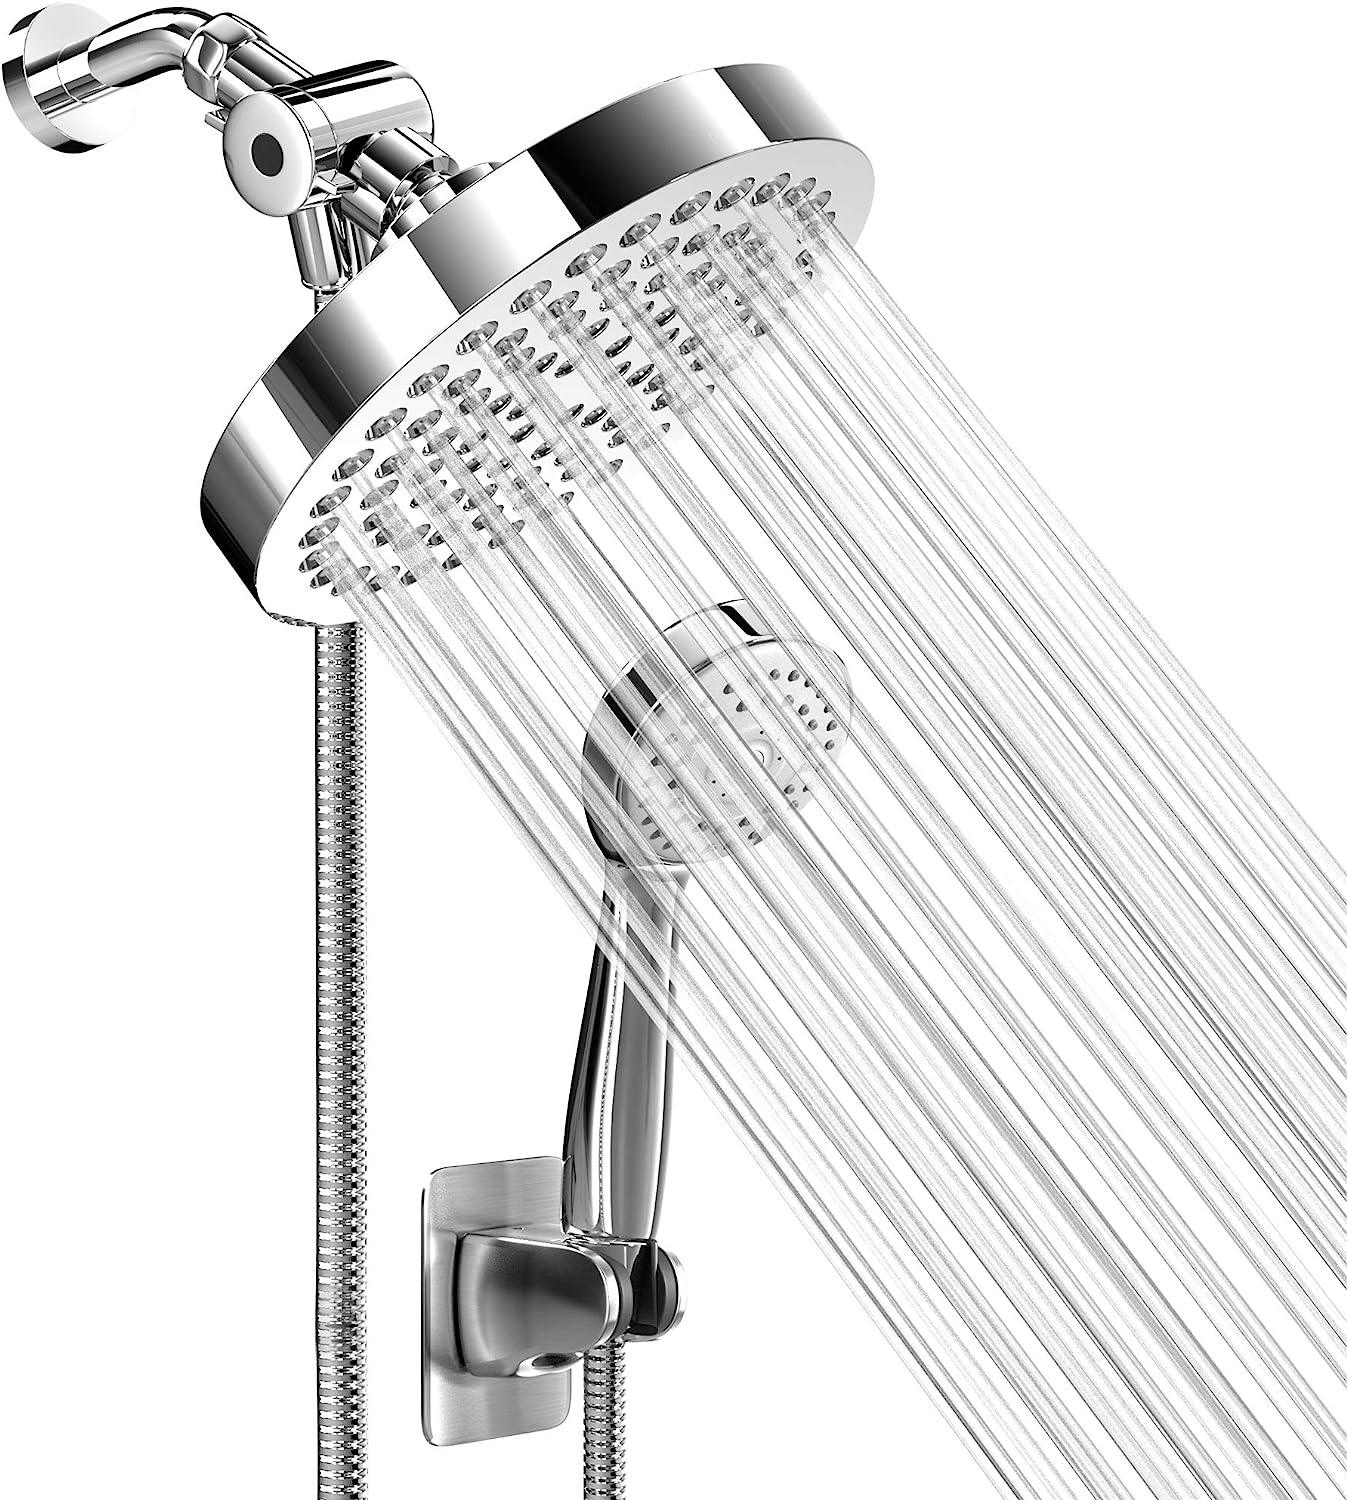 Cabezal de ducha fijo de alta presión con 5 ajustes con rótula giratoria de  metal ajustable, experiencia de ducha relajada incluso con bajo flujo de